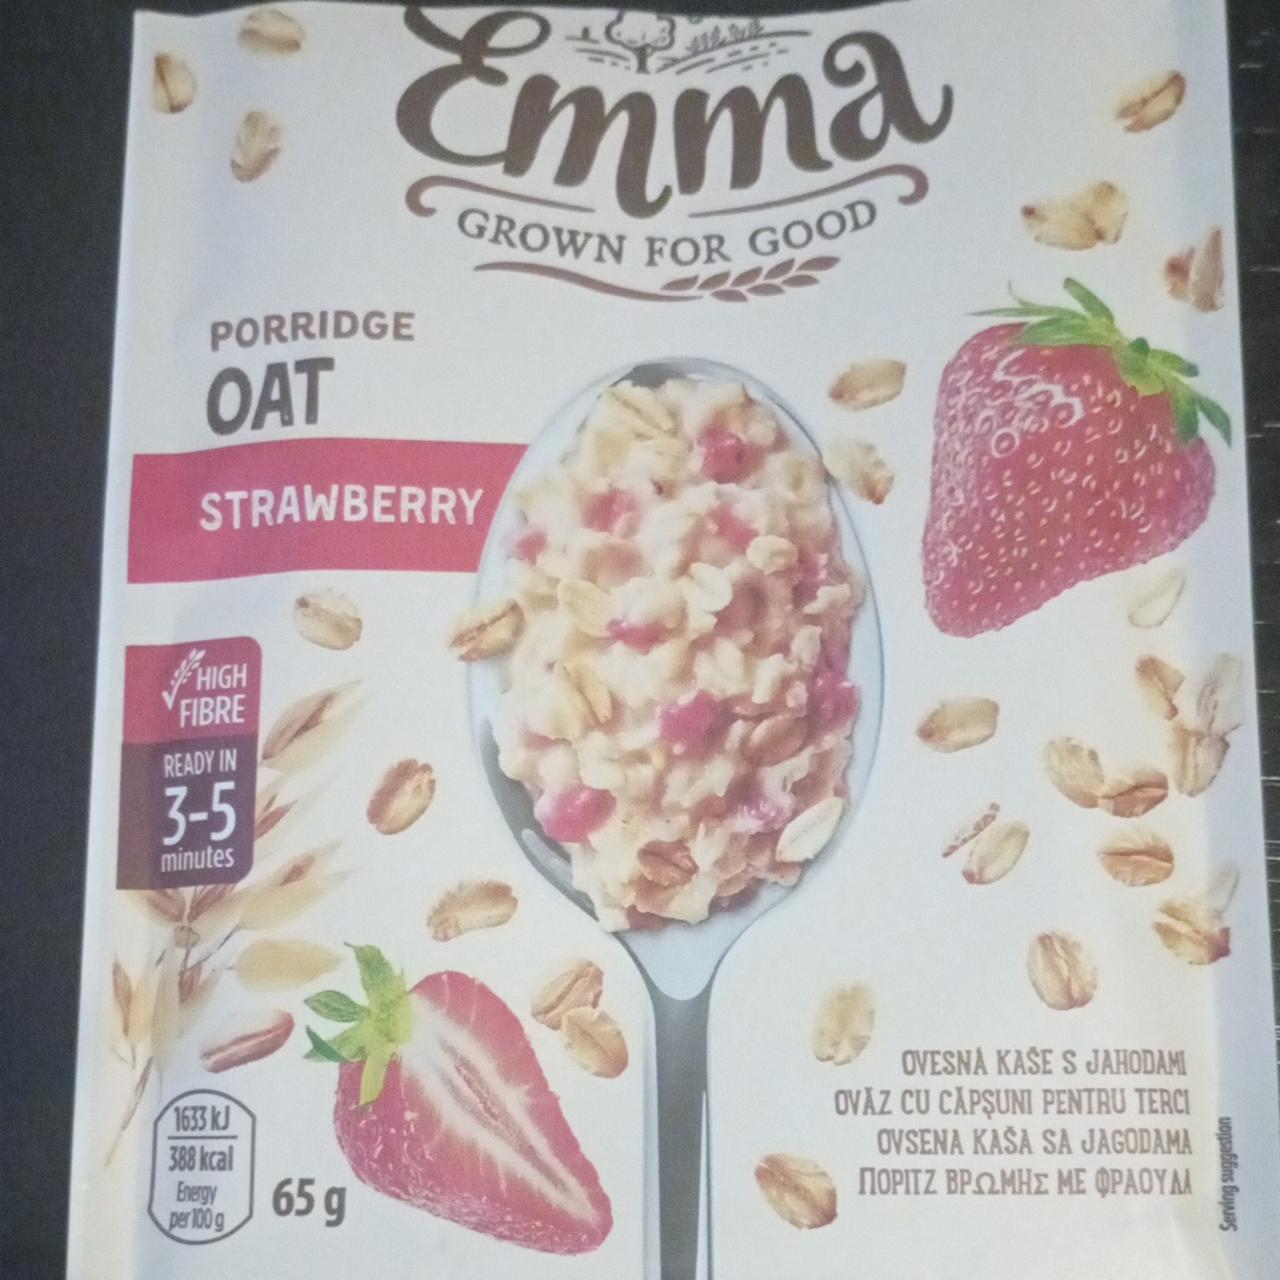 Fotografie - Porridge oat strawberry Emma Grown For Good